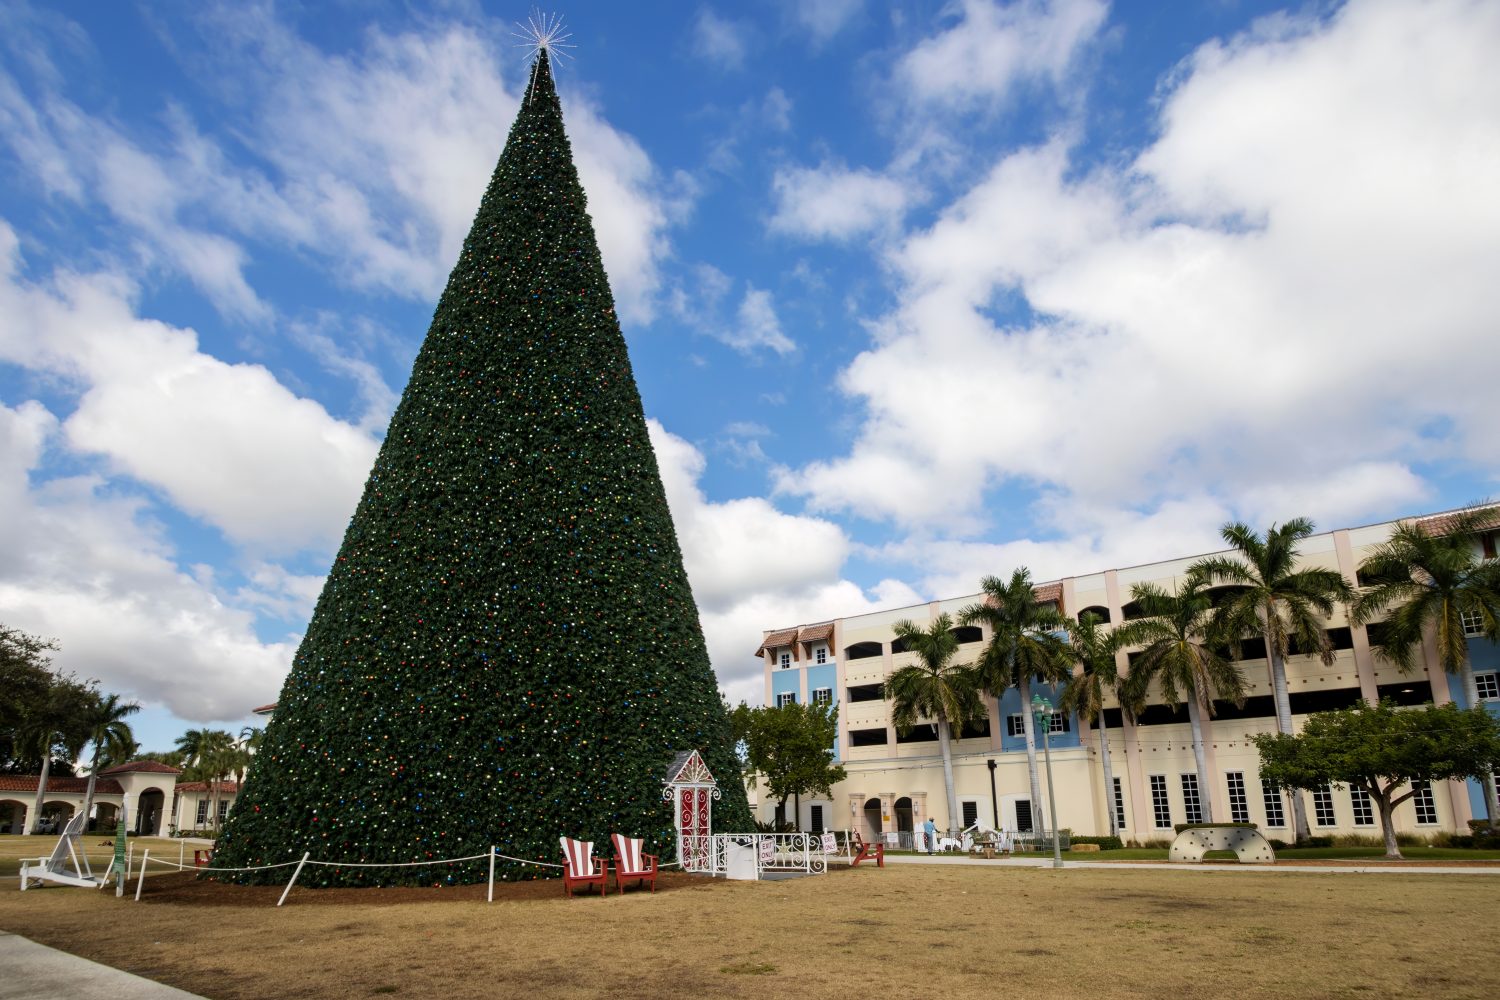 Il magnifico albero di Natale di 100 piedi a Delray Beach, Florida, Stati Uniti